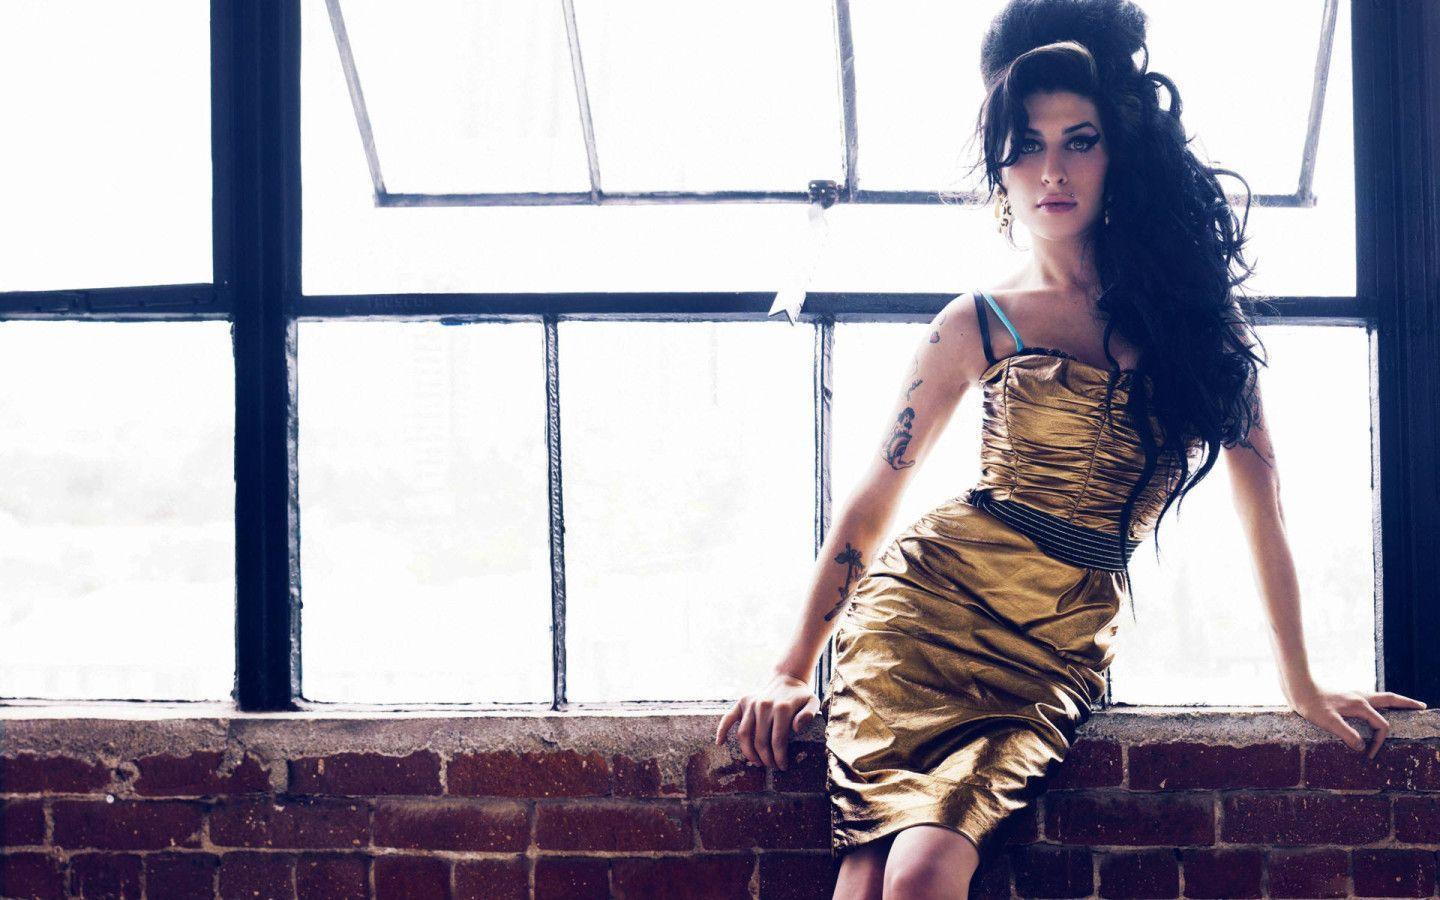 Amy Winehouse Looking Fabulous widescreen wallpaper. Wide